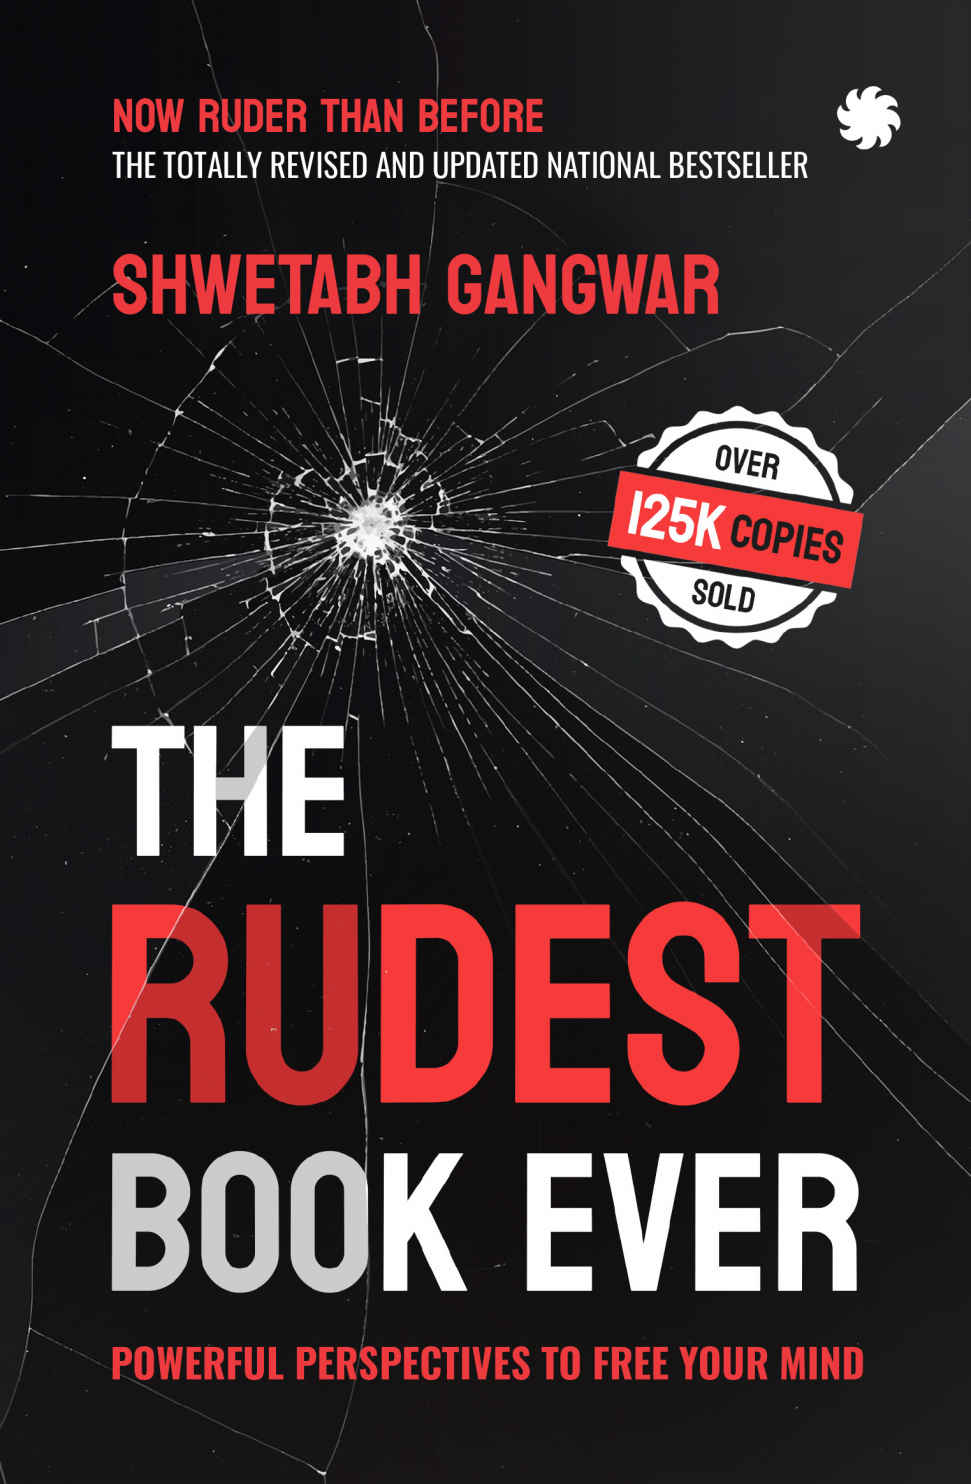 Самая грубая книга на свете. Мощные перспективы для освобождения вашего разума - Gagwar, Shwetabh